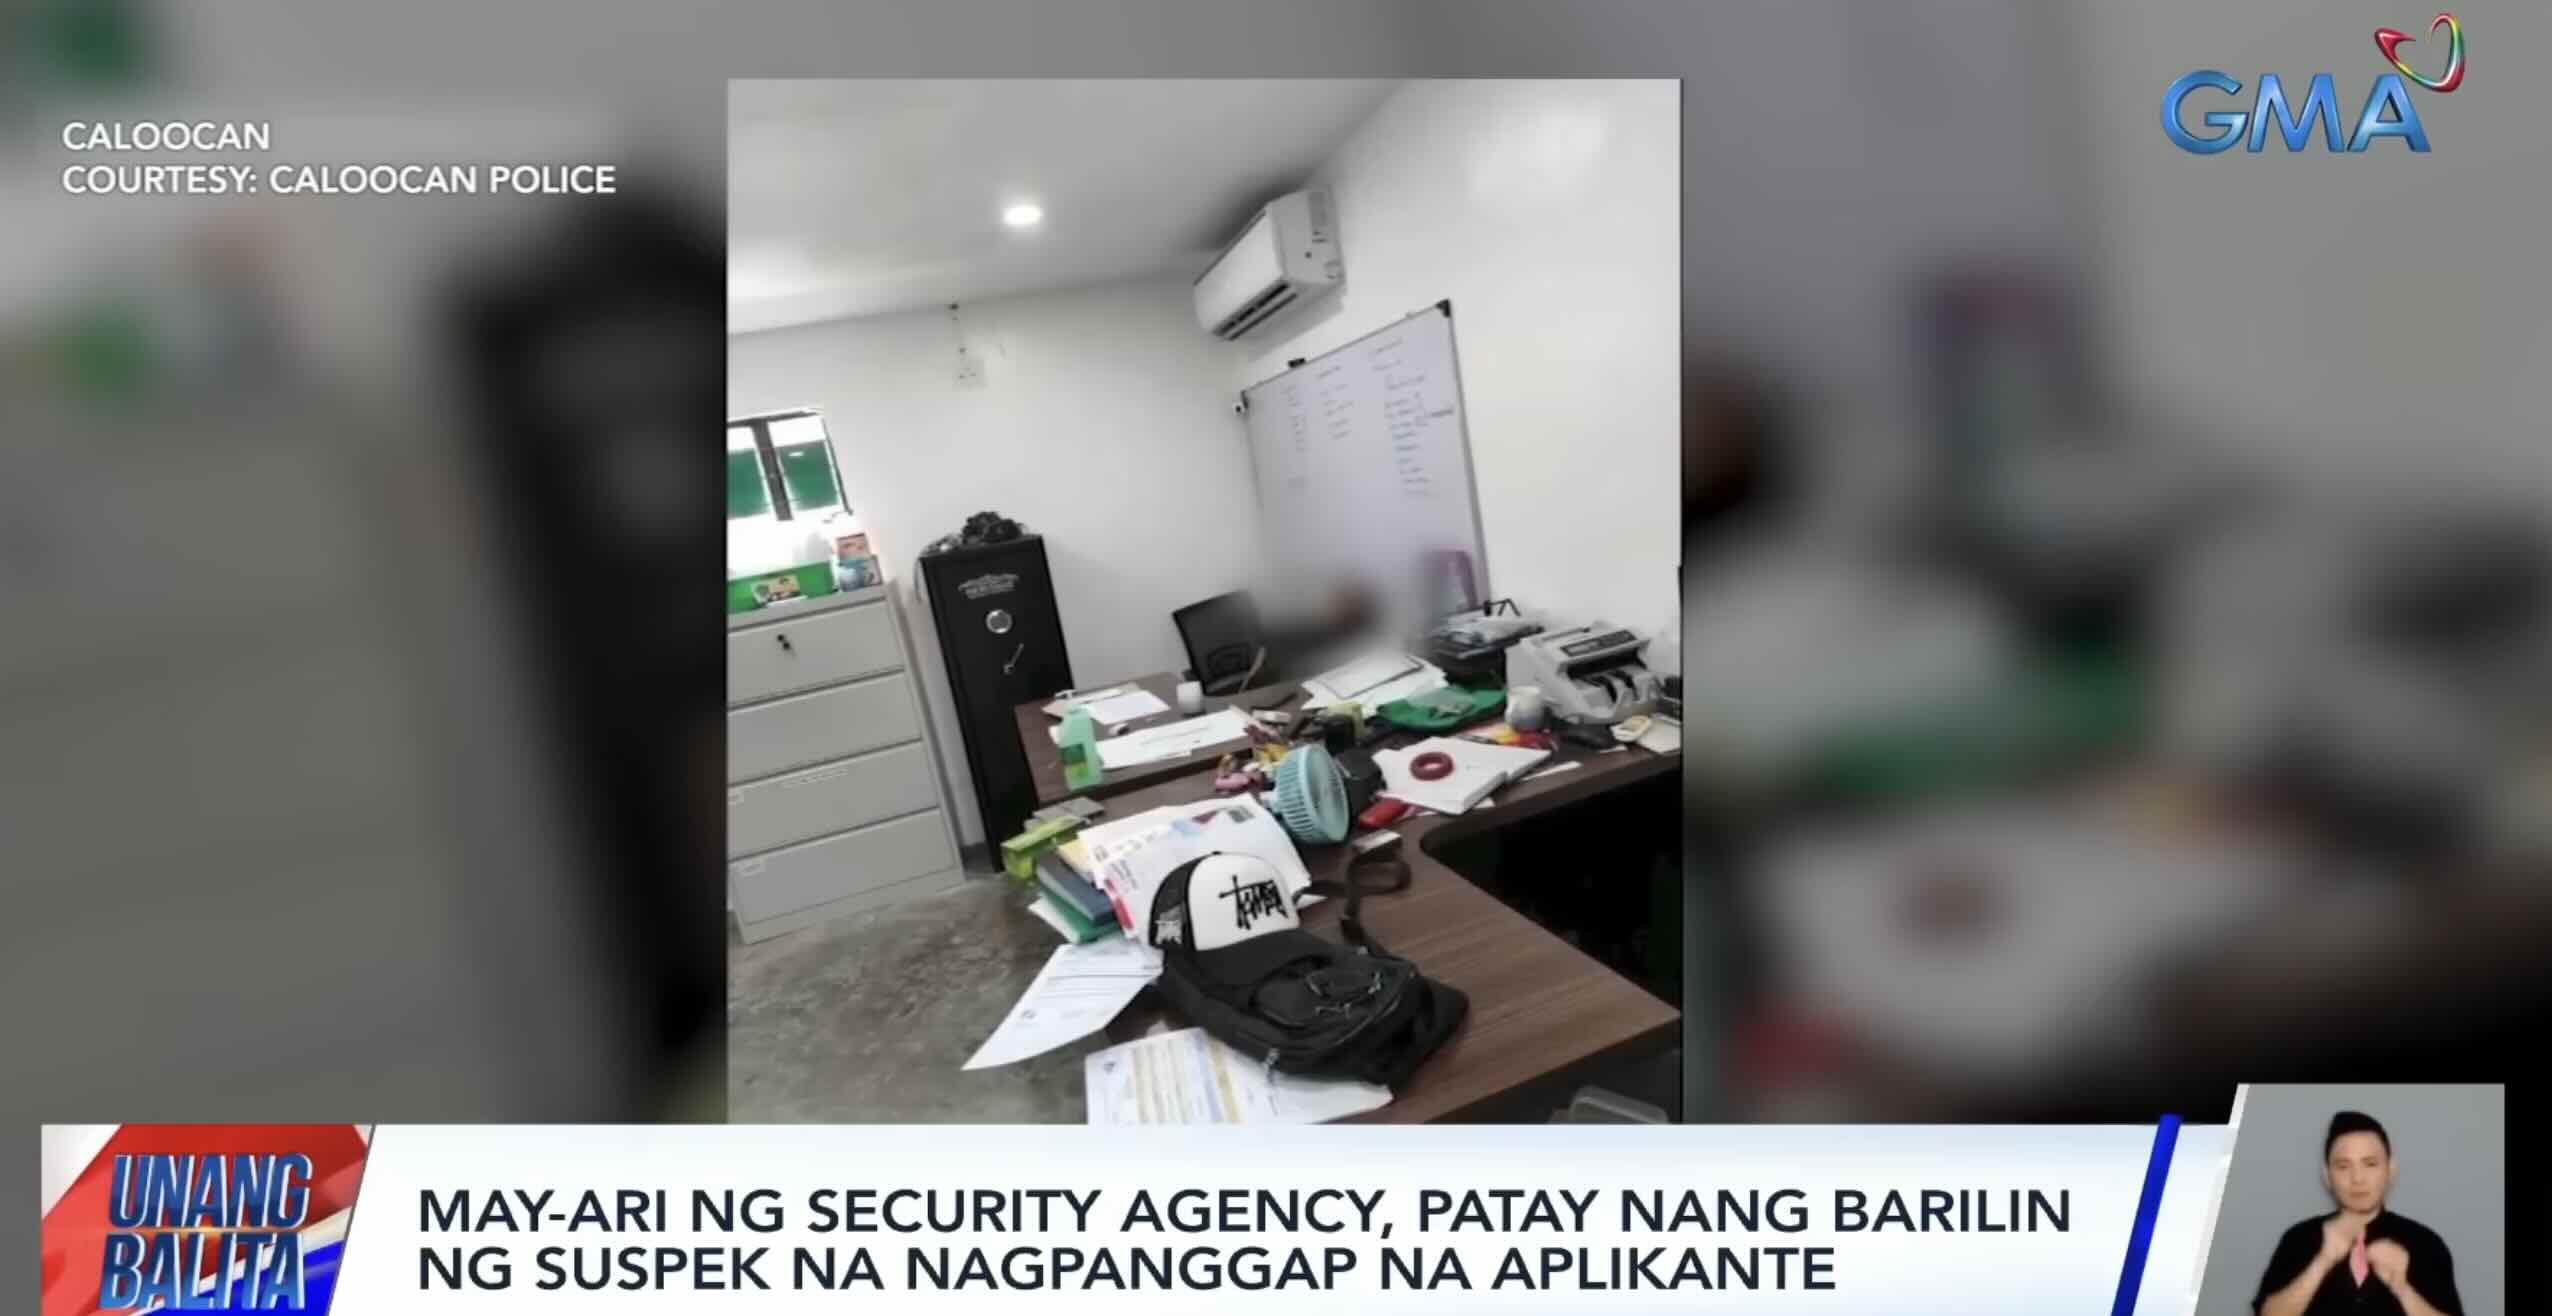 May-ari ng security agency, patay matapos barilin sa opisina ng salaring nagpanggap na aplikante thumbnail